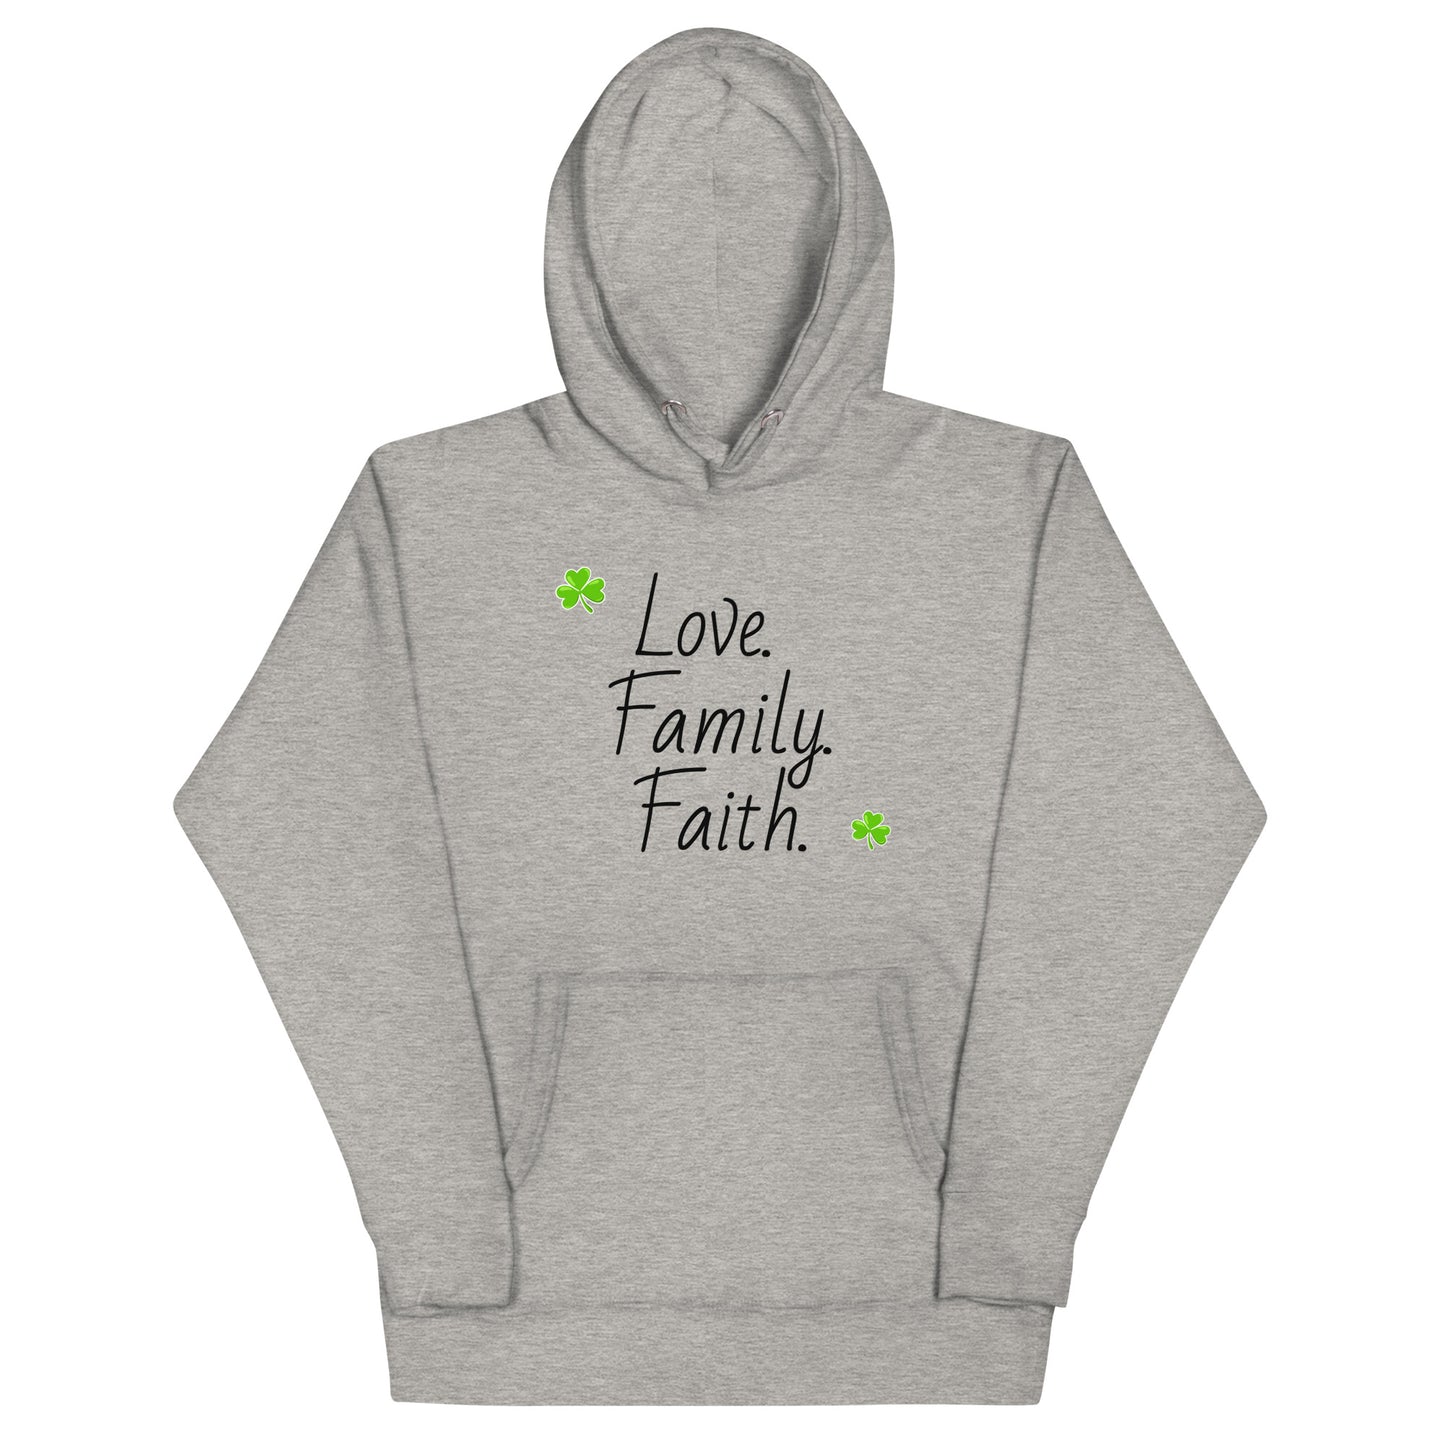 Love, Family, Faith - Unisex Hoodie (black lettering)